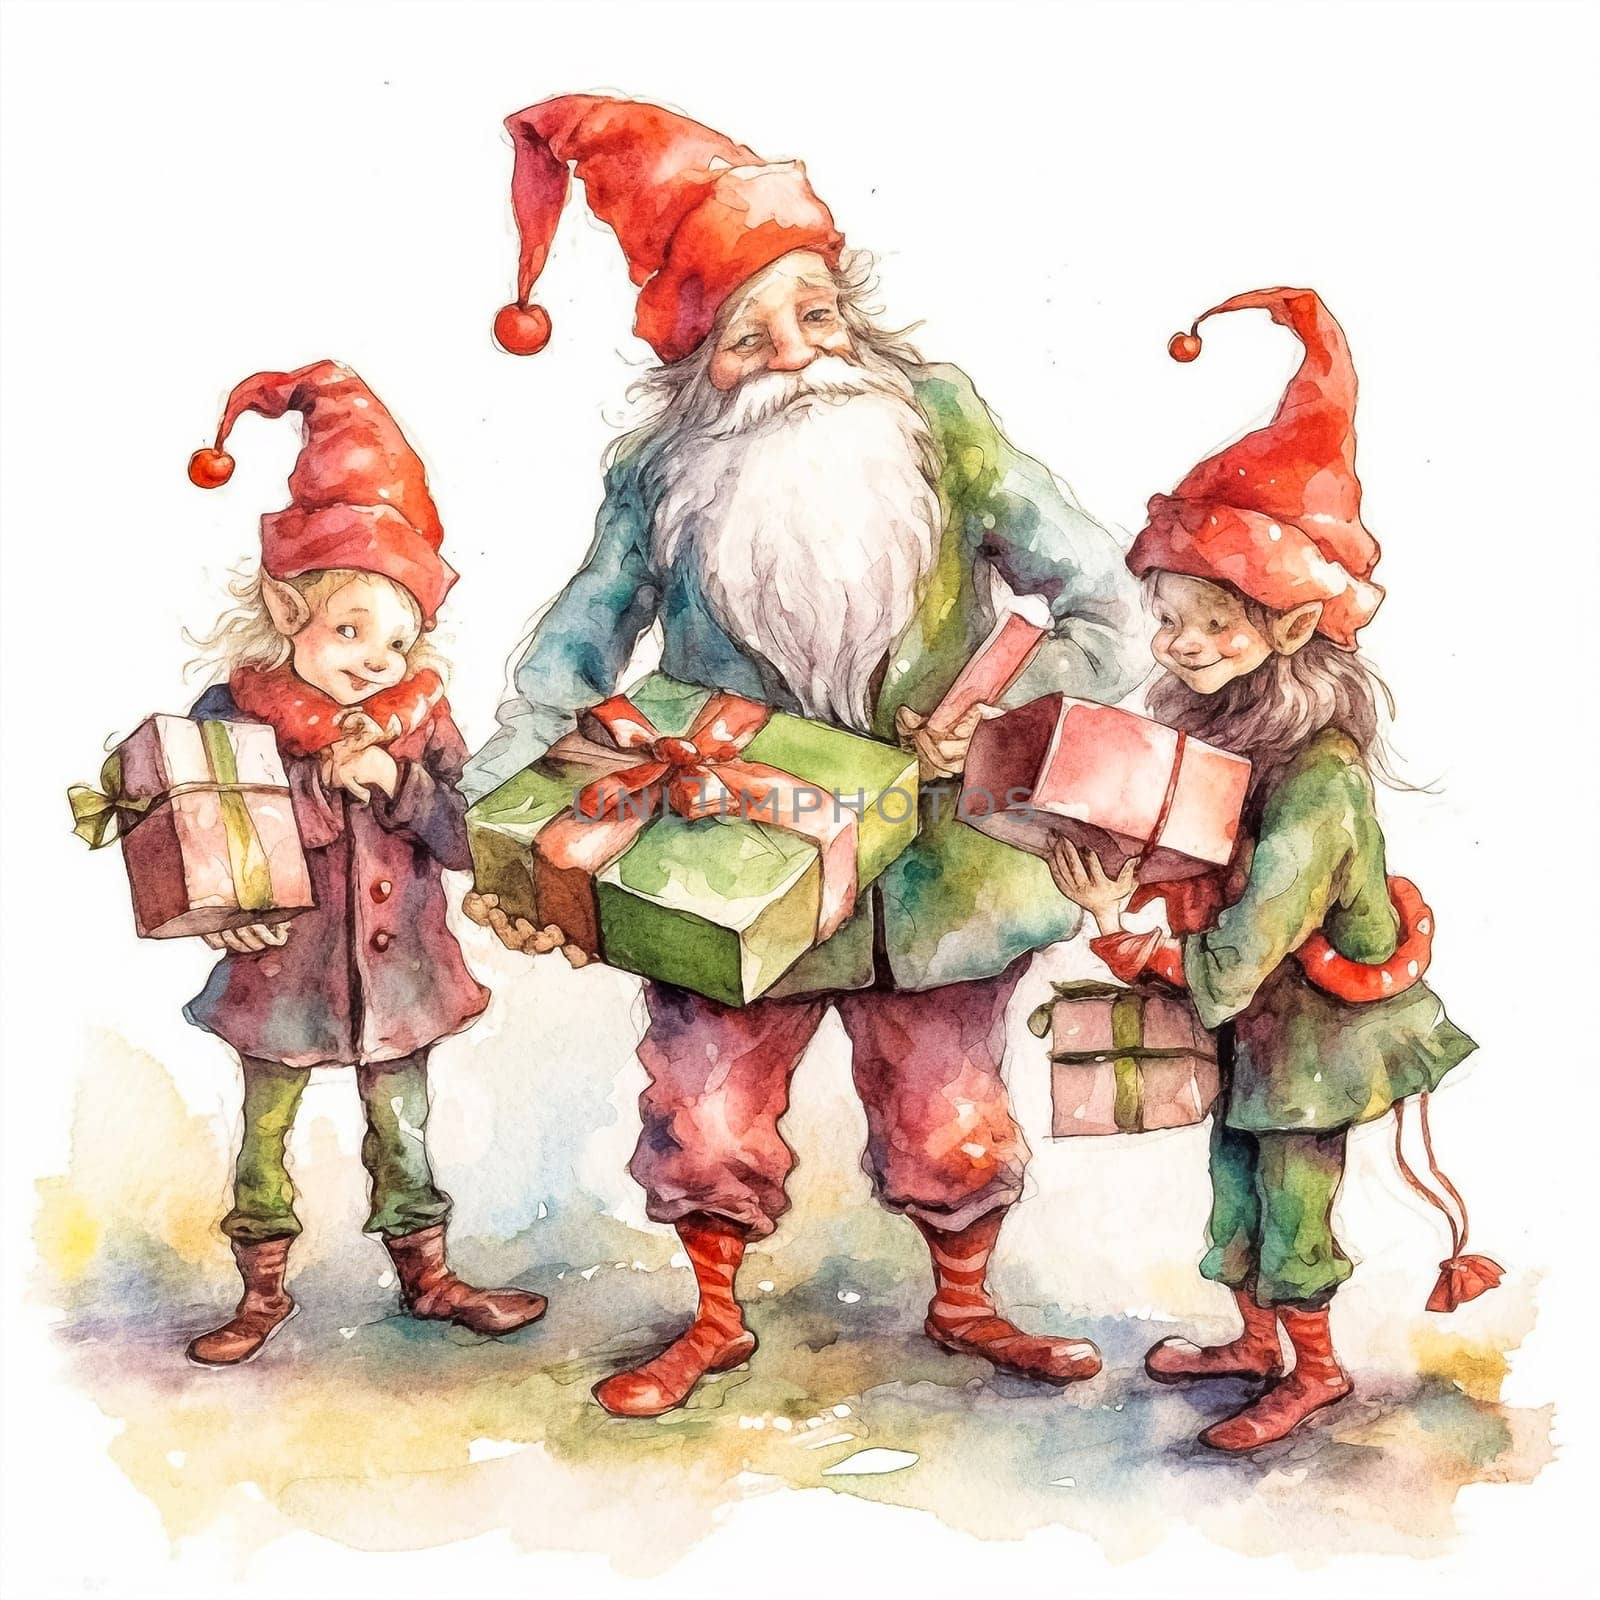 Whimsical watercolor portrays Santa's helper gnomes by Alla_Morozova93